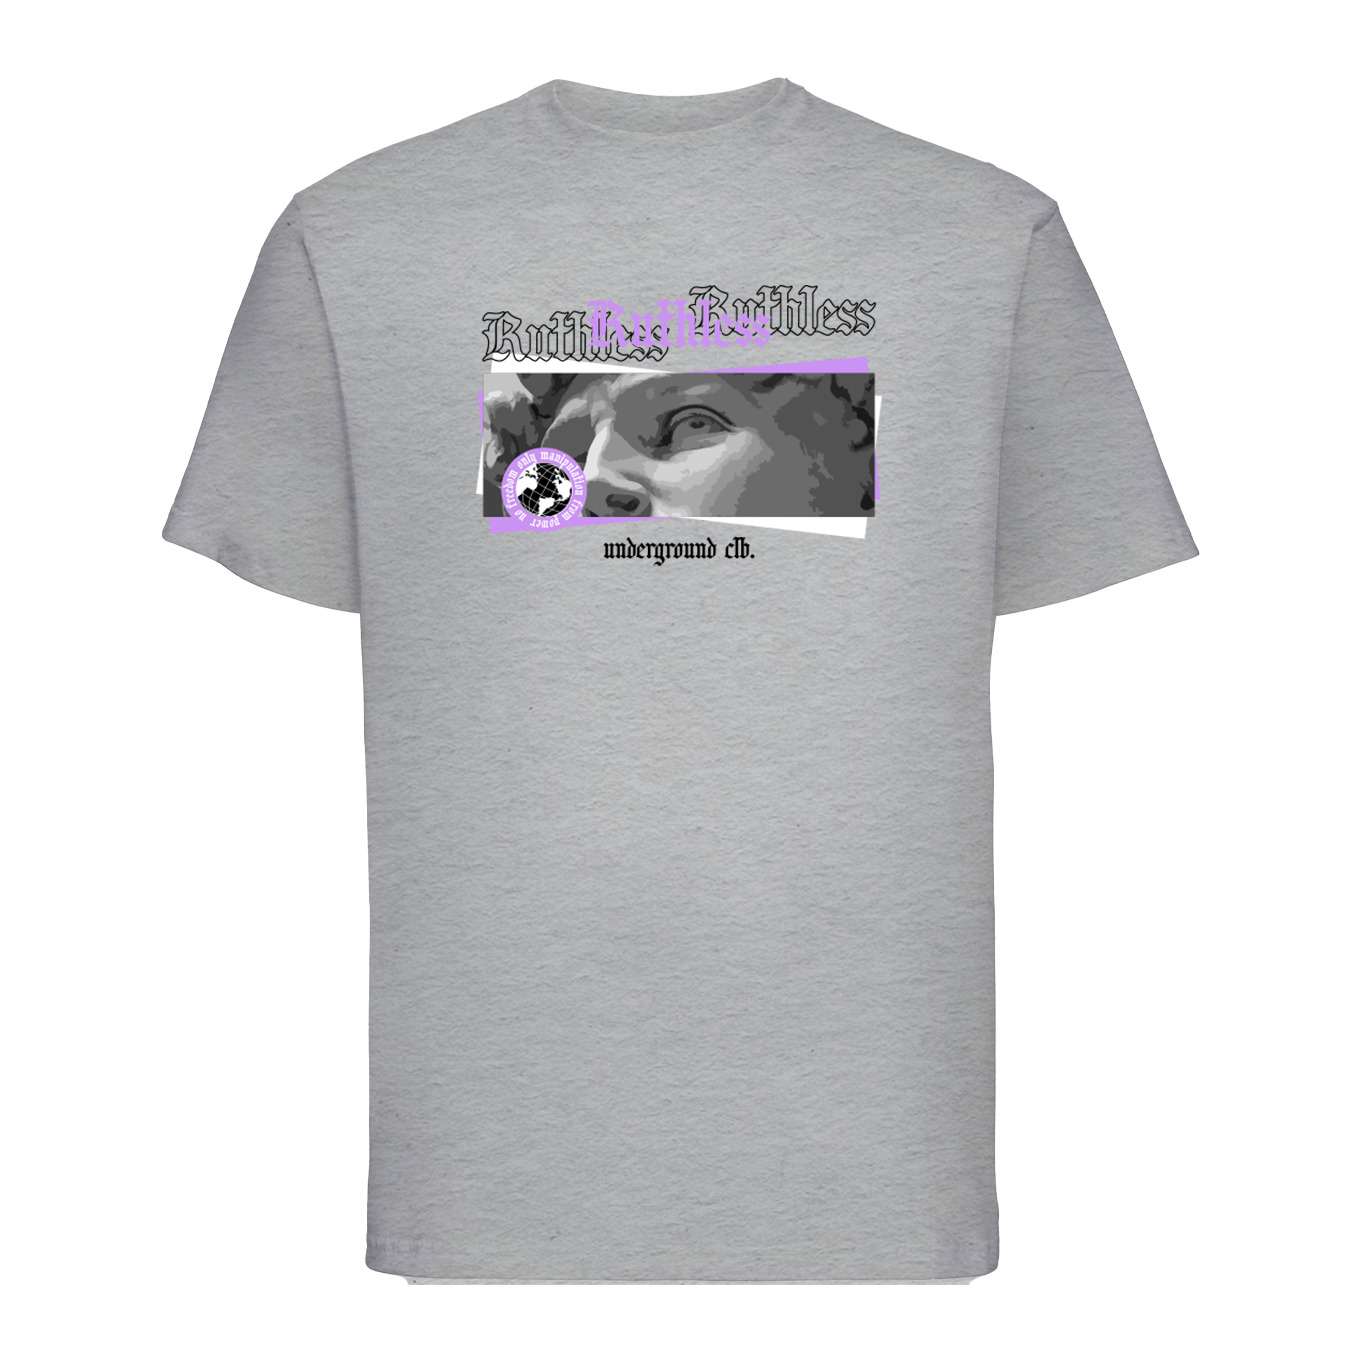 T-shirt "Ruthless"